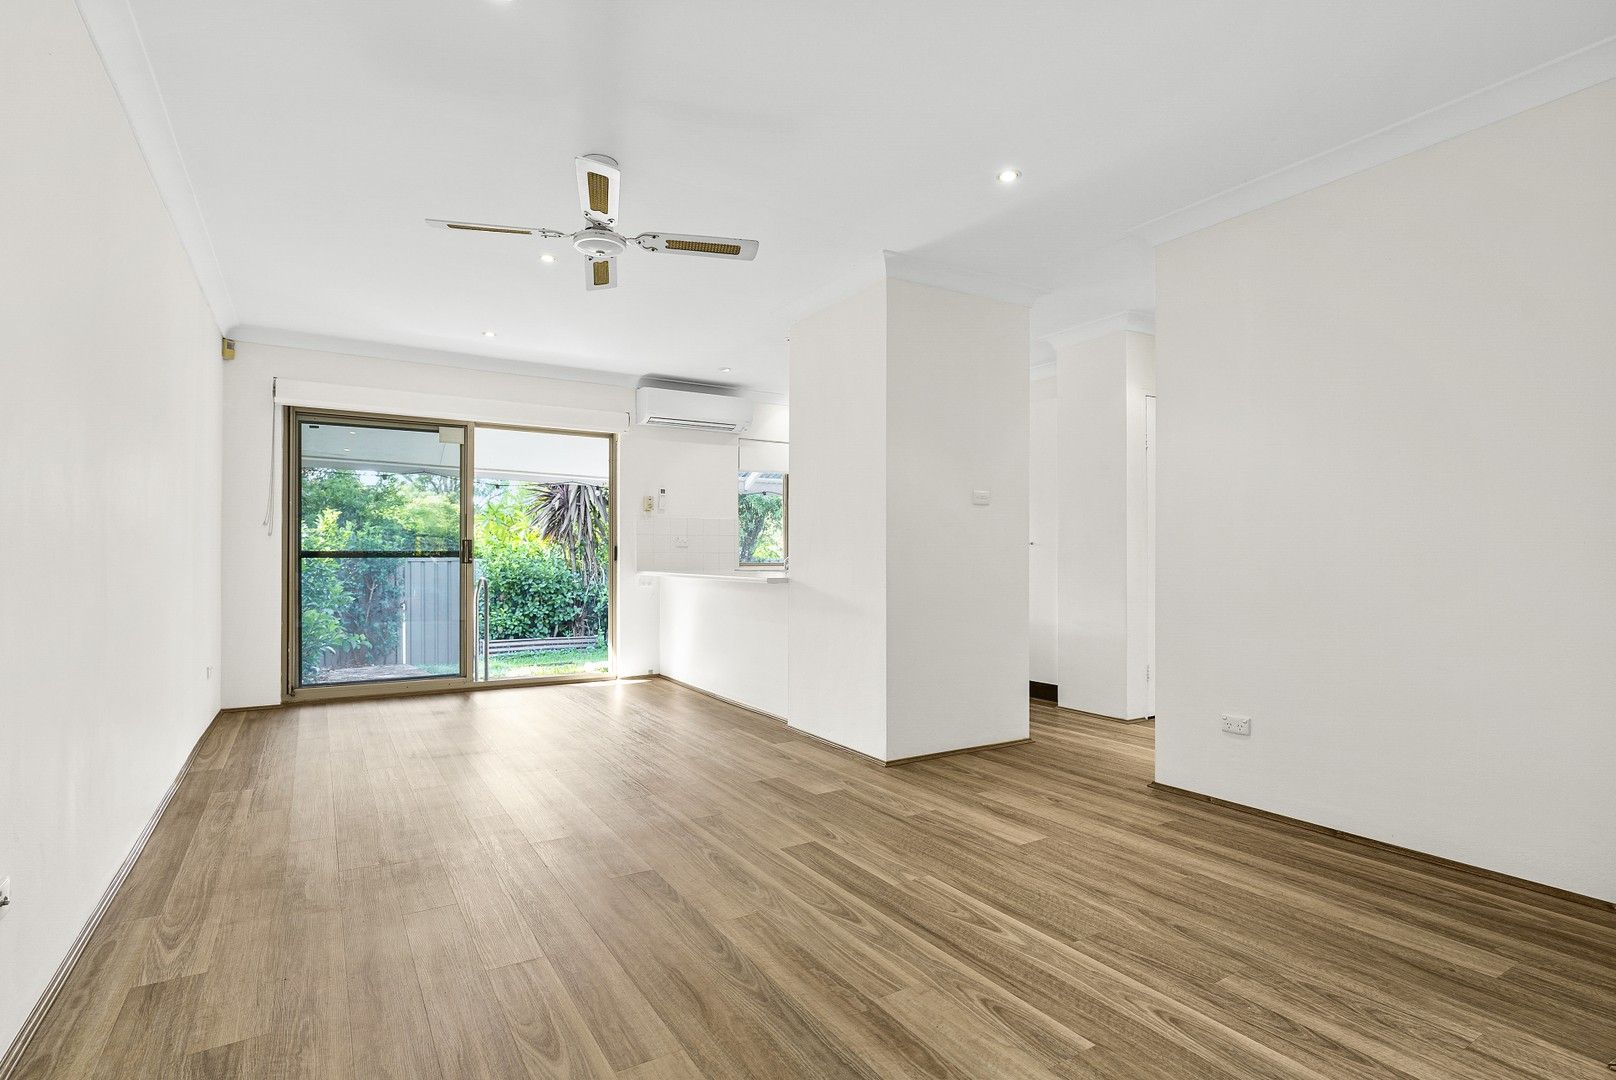 2 bedrooms Apartment / Unit / Flat in 8D/218 Box Road MIRANDA NSW, 2228